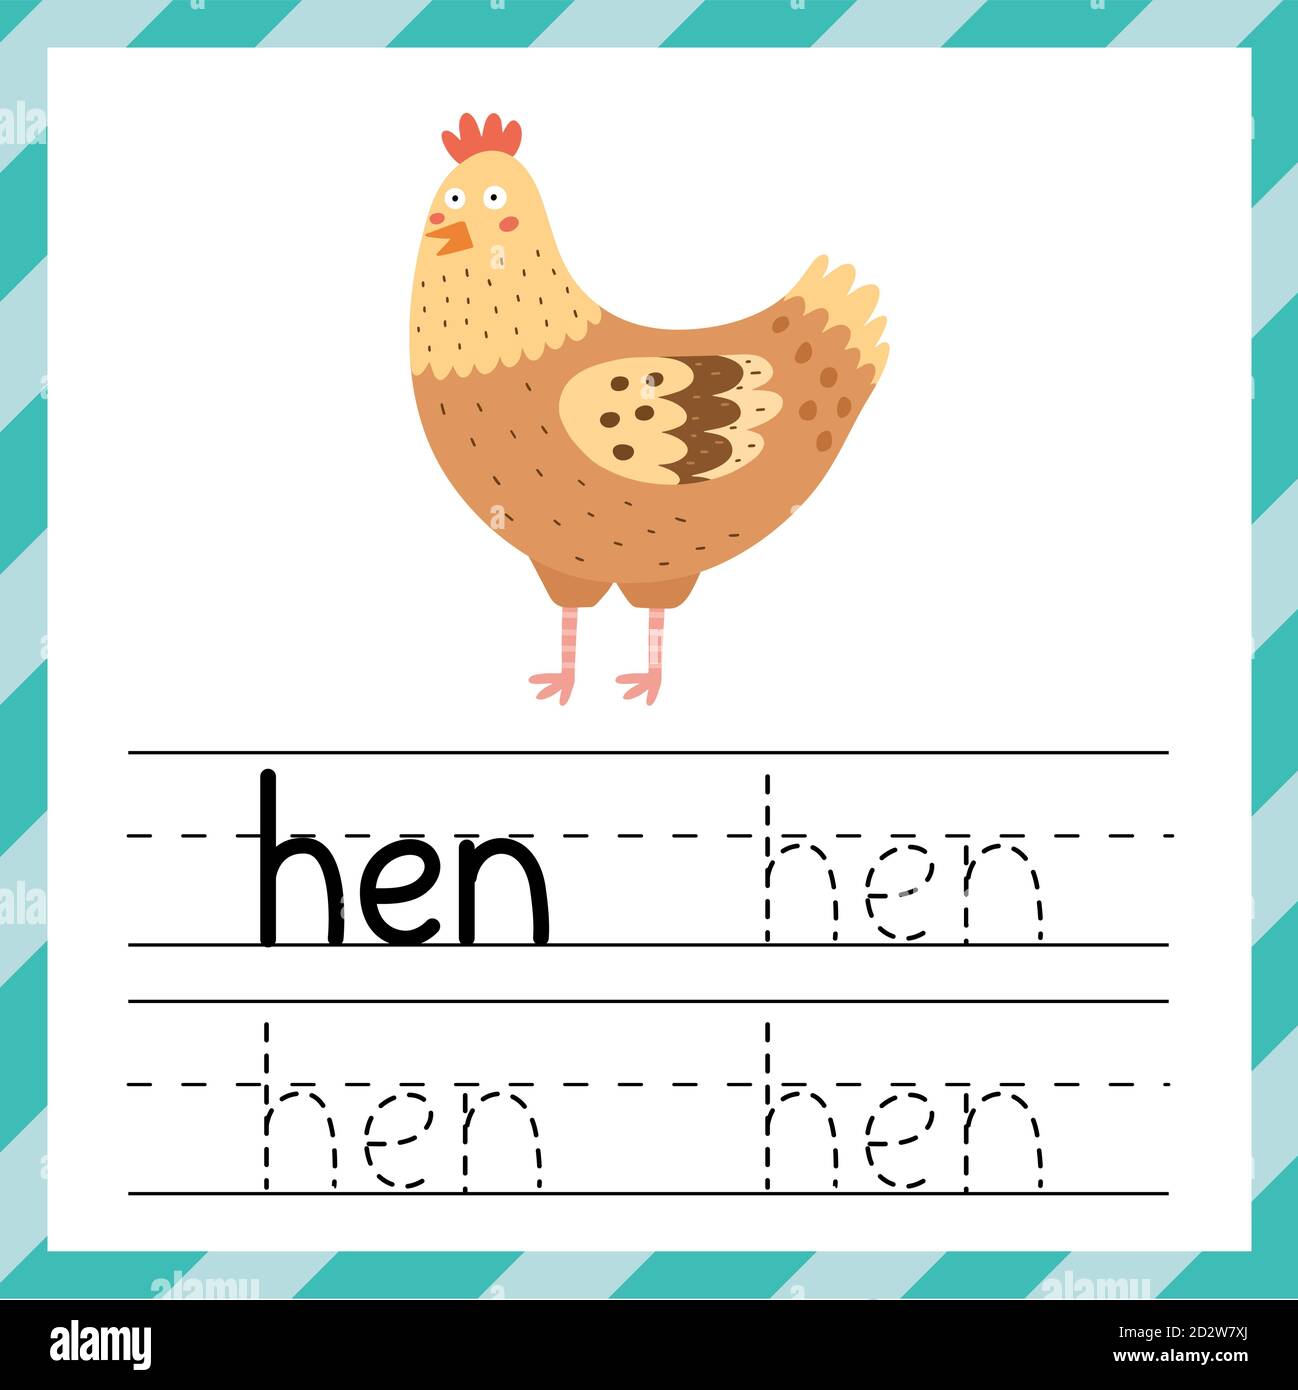 Feuille de travail pour le traçage des mots - Hen. Matériel d'apprentissage pour les enfants Illustration de Vecteur